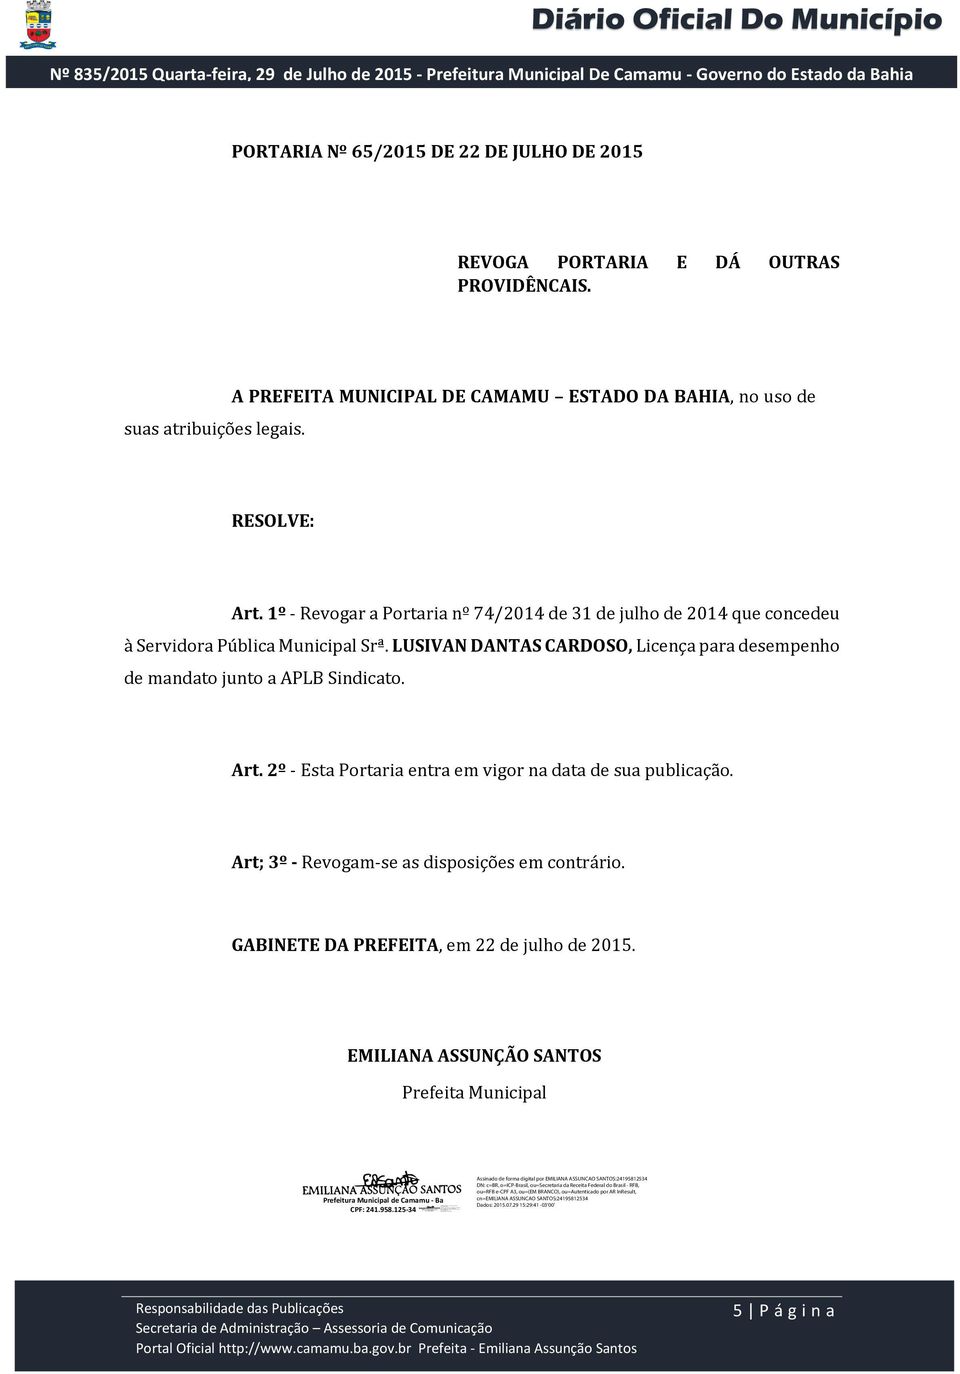 1º - Revogar a Portaria nº 74/2014 de 31 de julho de 2014 que concedeu à Servidora Pública Municipal Srª.